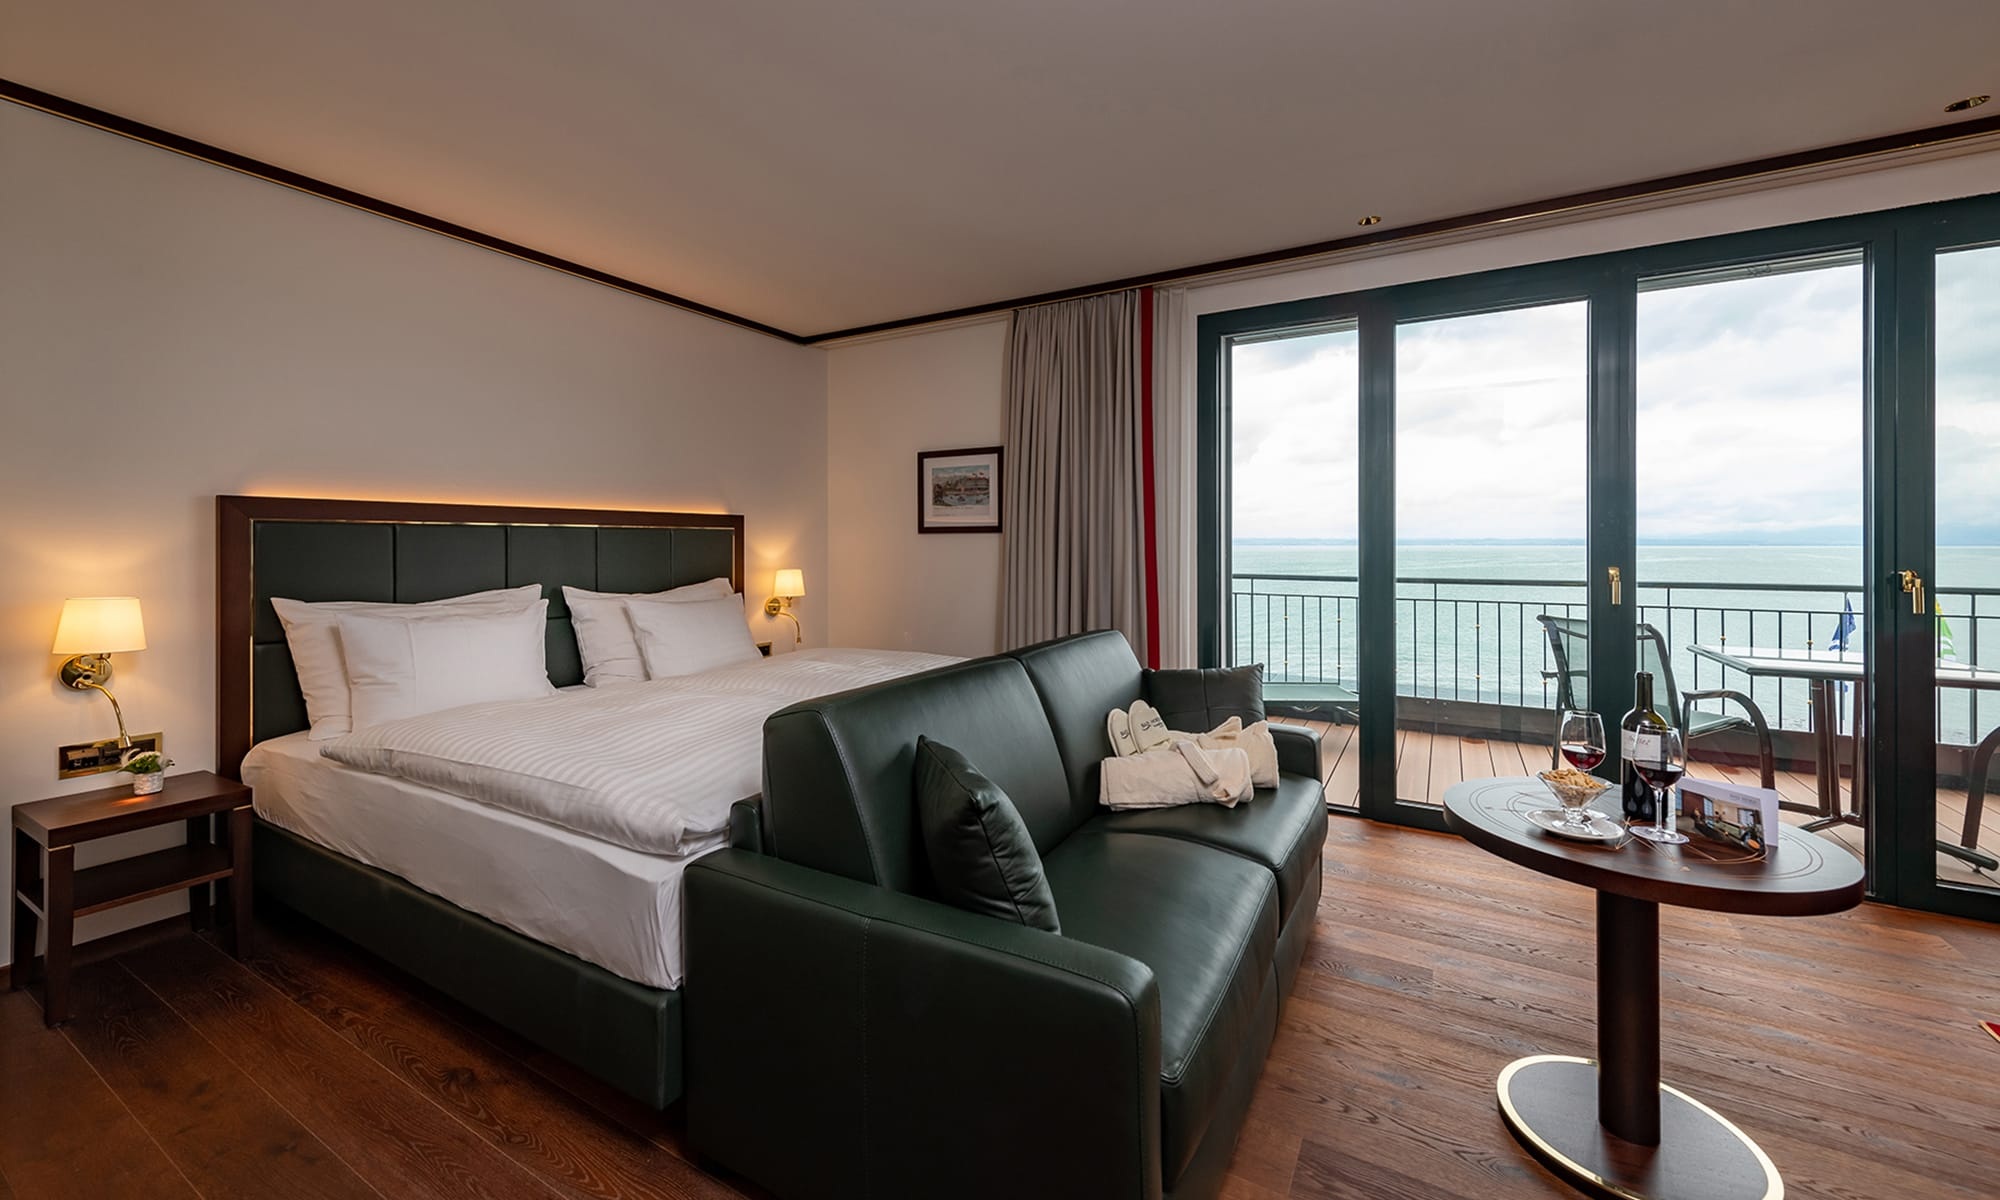 Blick ins Hotelzimmer mit Doppelbett, grosser Fensterfront und Balkon mit Sicht auf den Bodensee